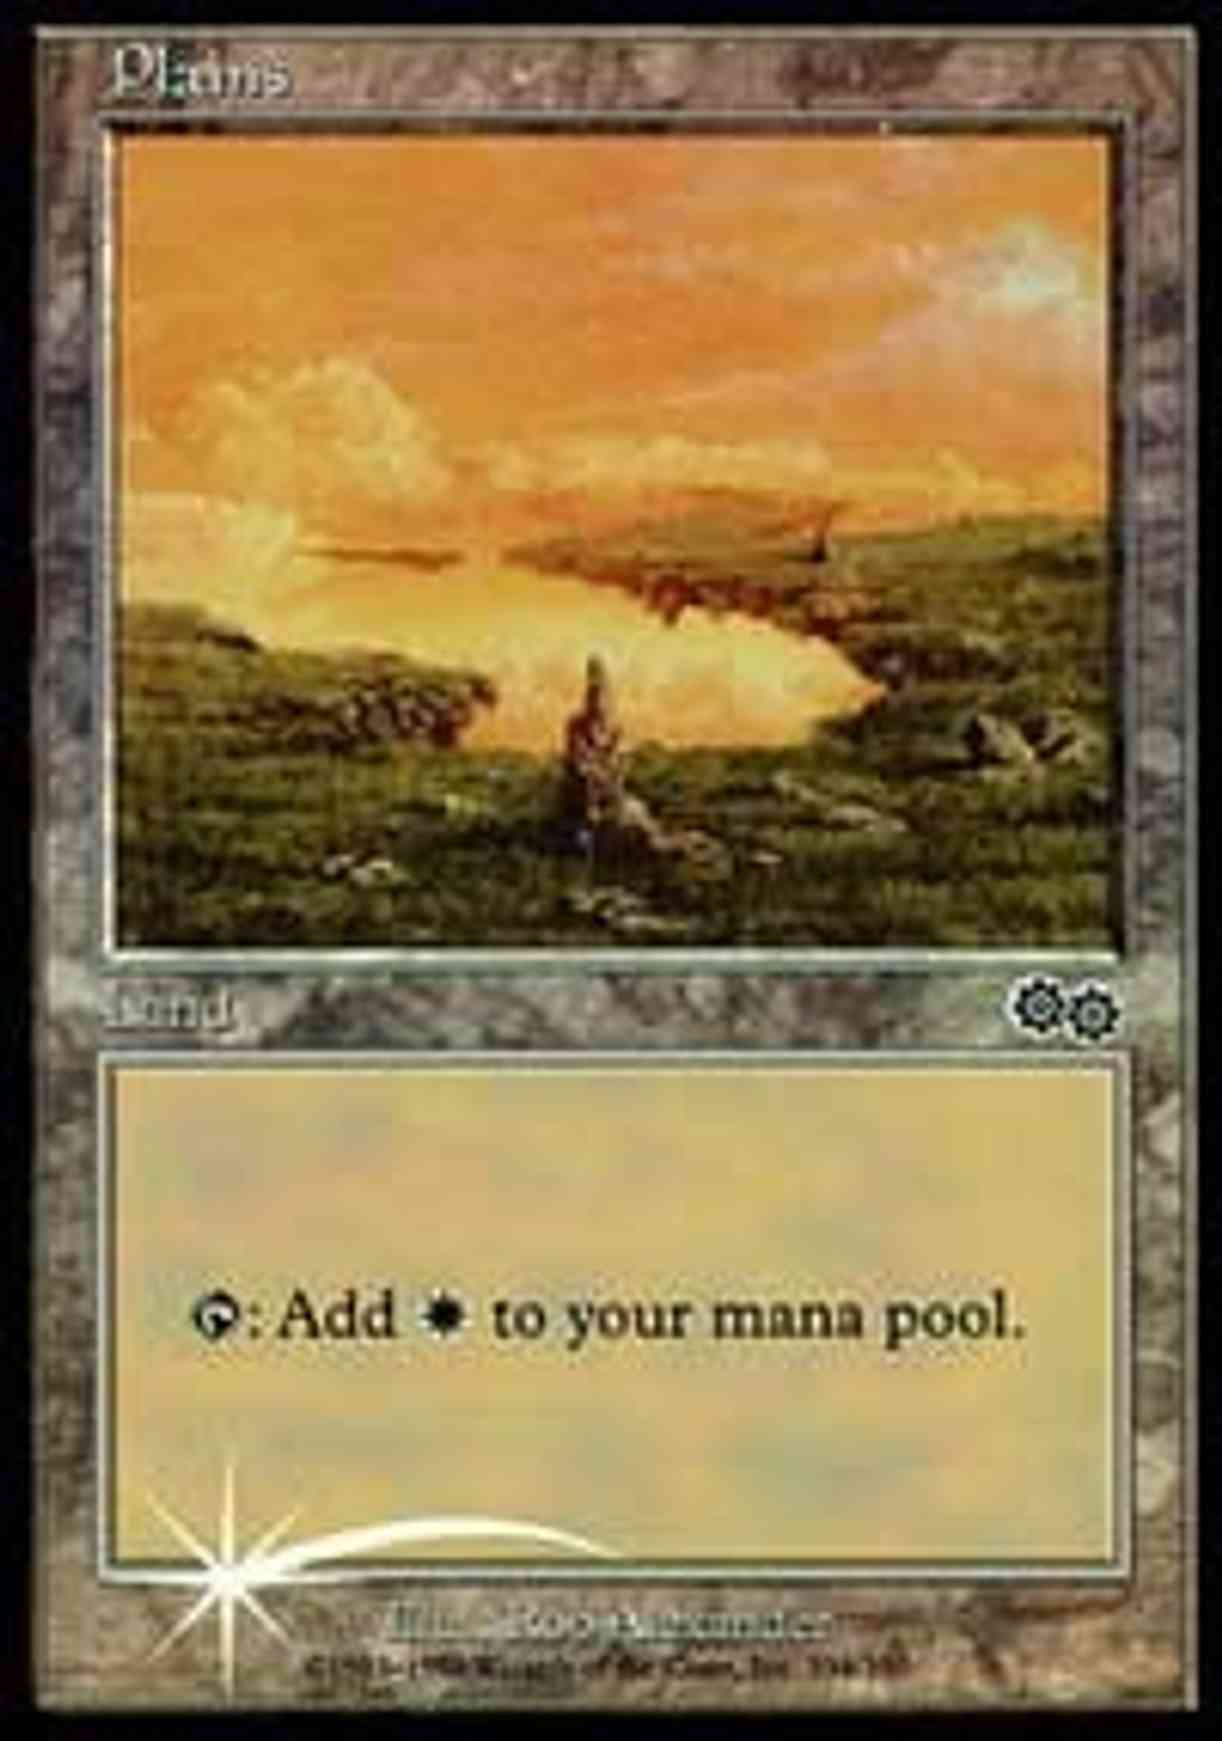 Plains (1999) magic card front